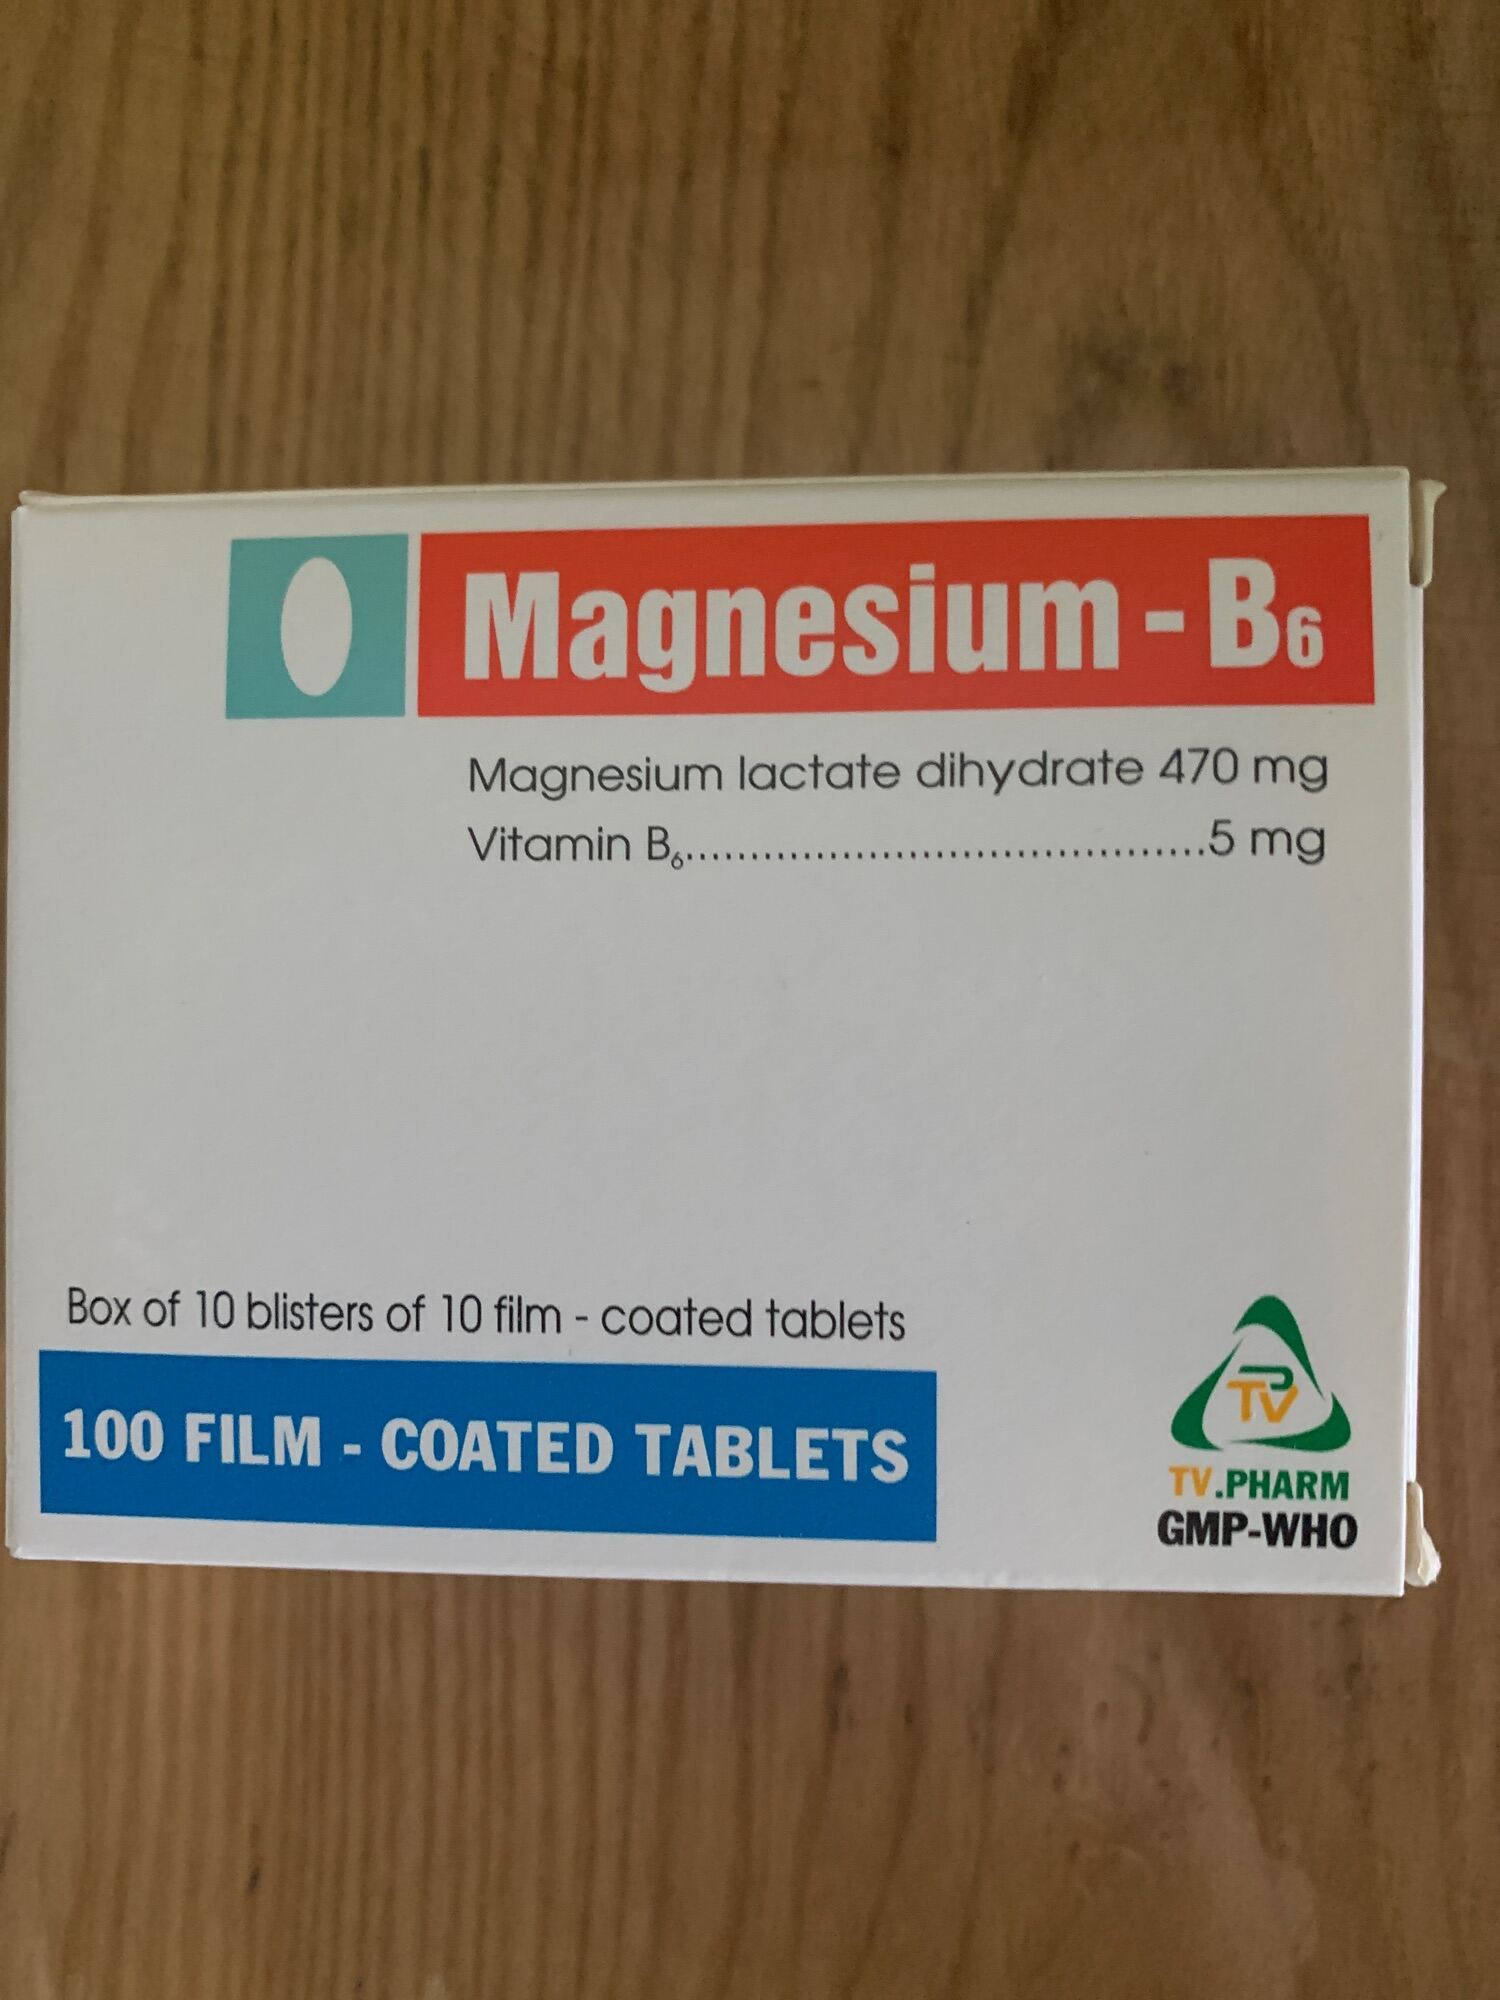 Magnesium-b6